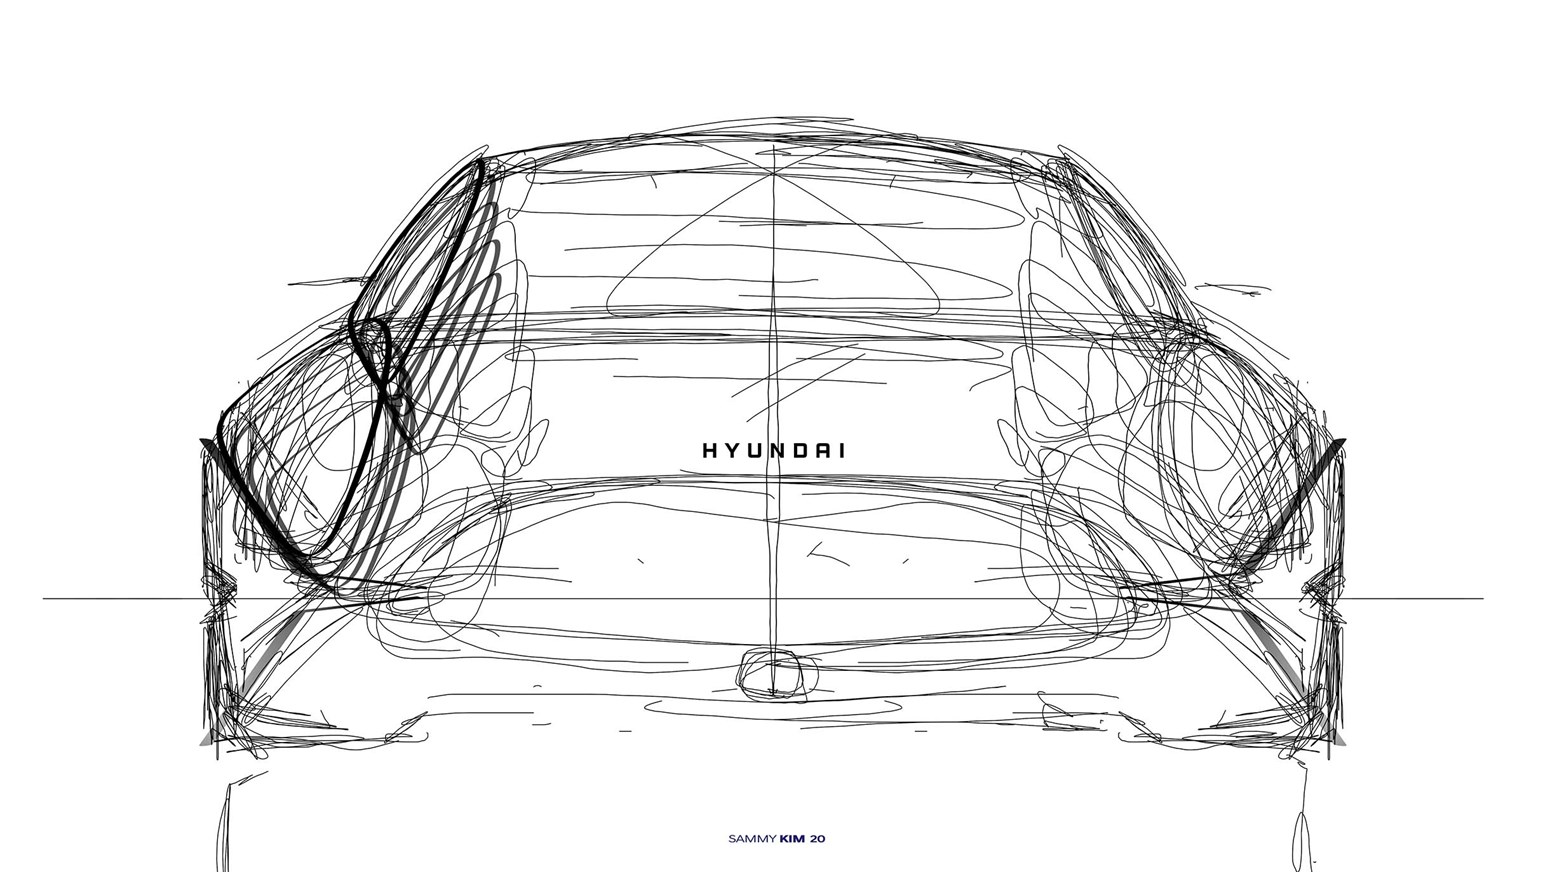 Tegning af Hyundai Prophecy konceptbil